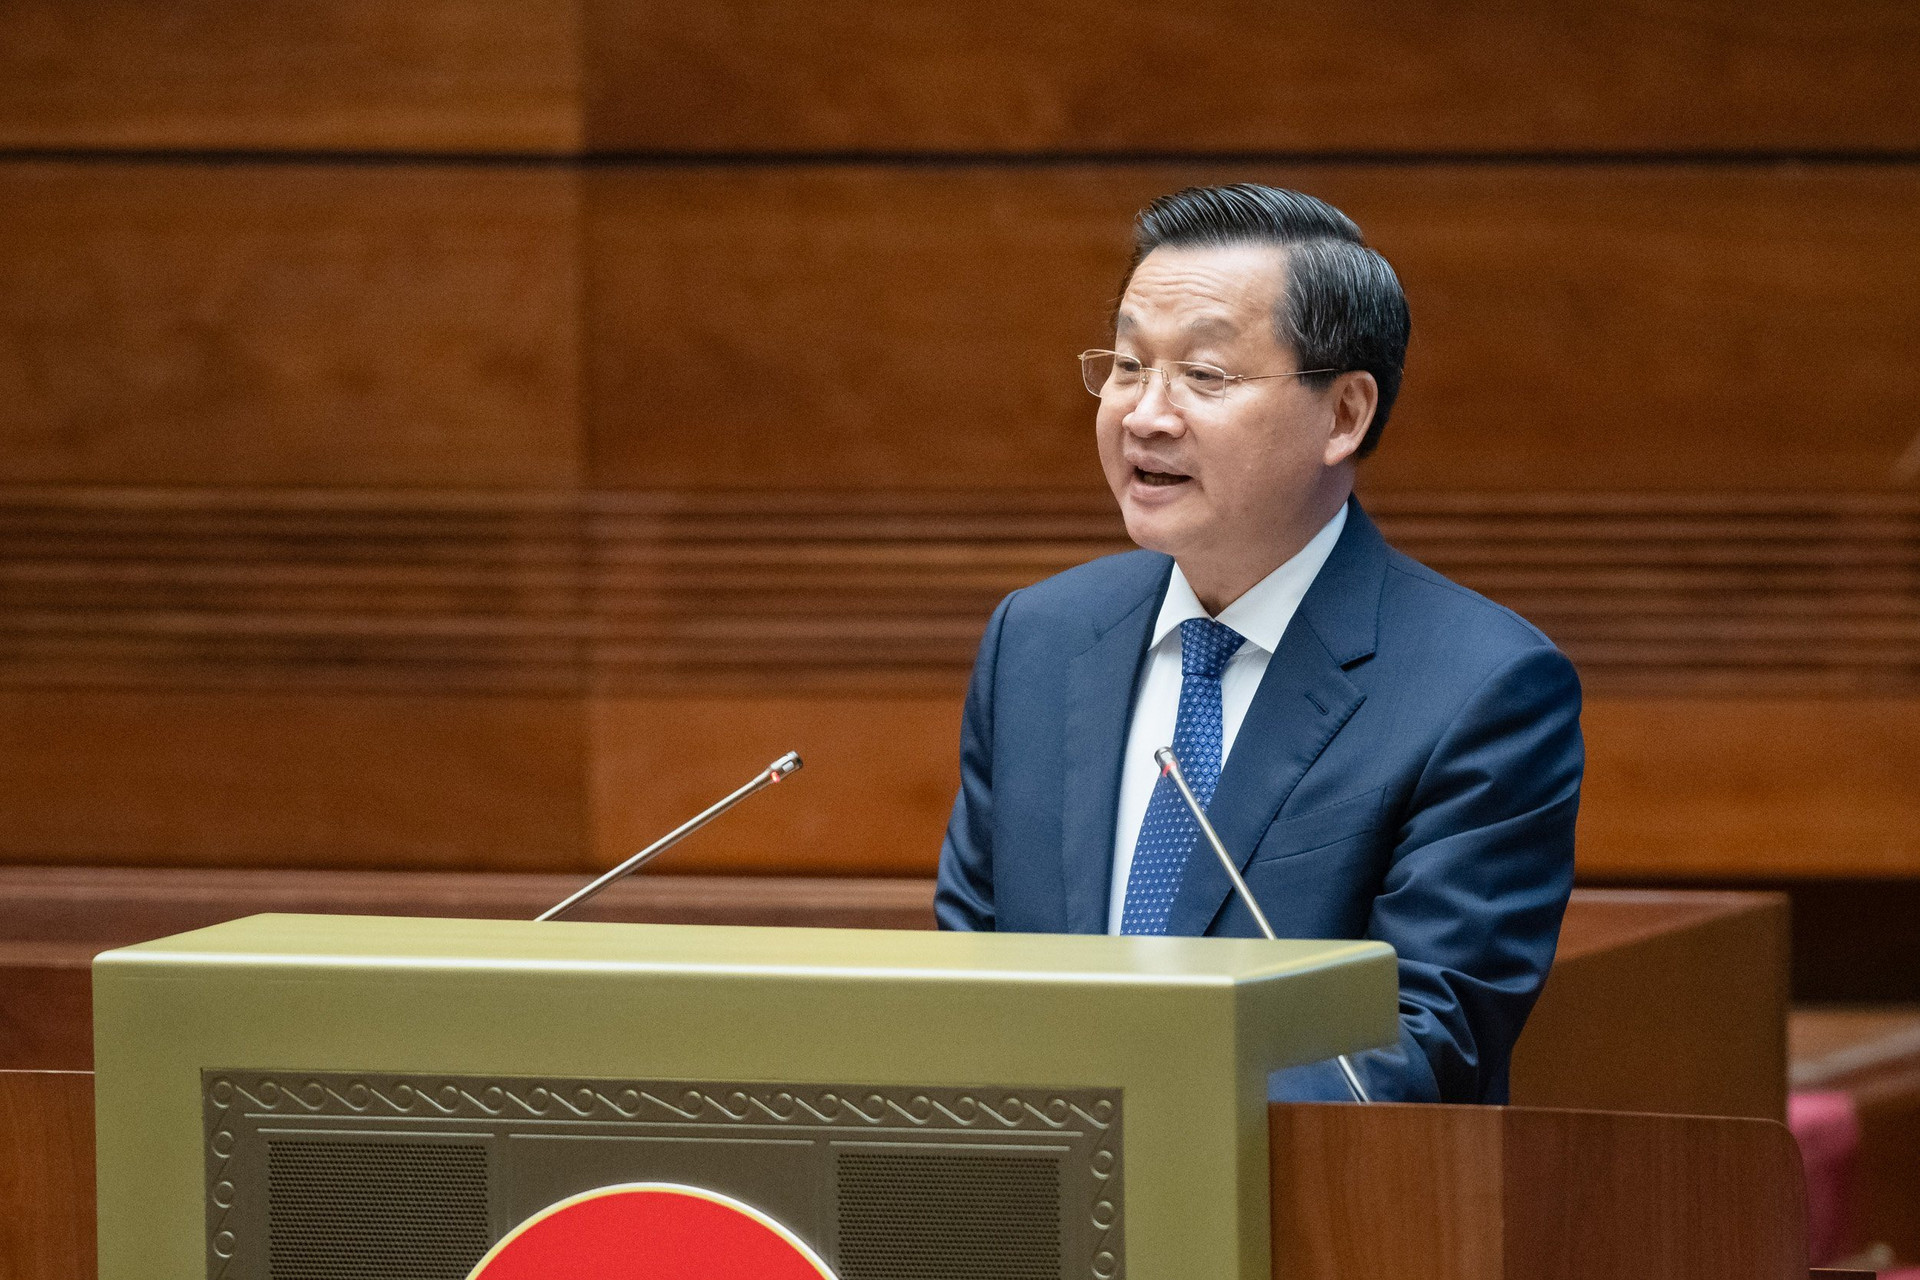 Phó Thủ tướng Chính phủ Lê Minh Khái trình bày báo cáo tại kỳ họp thứ bảy, Quốc hội khóa XV. Ảnh: media.quochoi.vn.